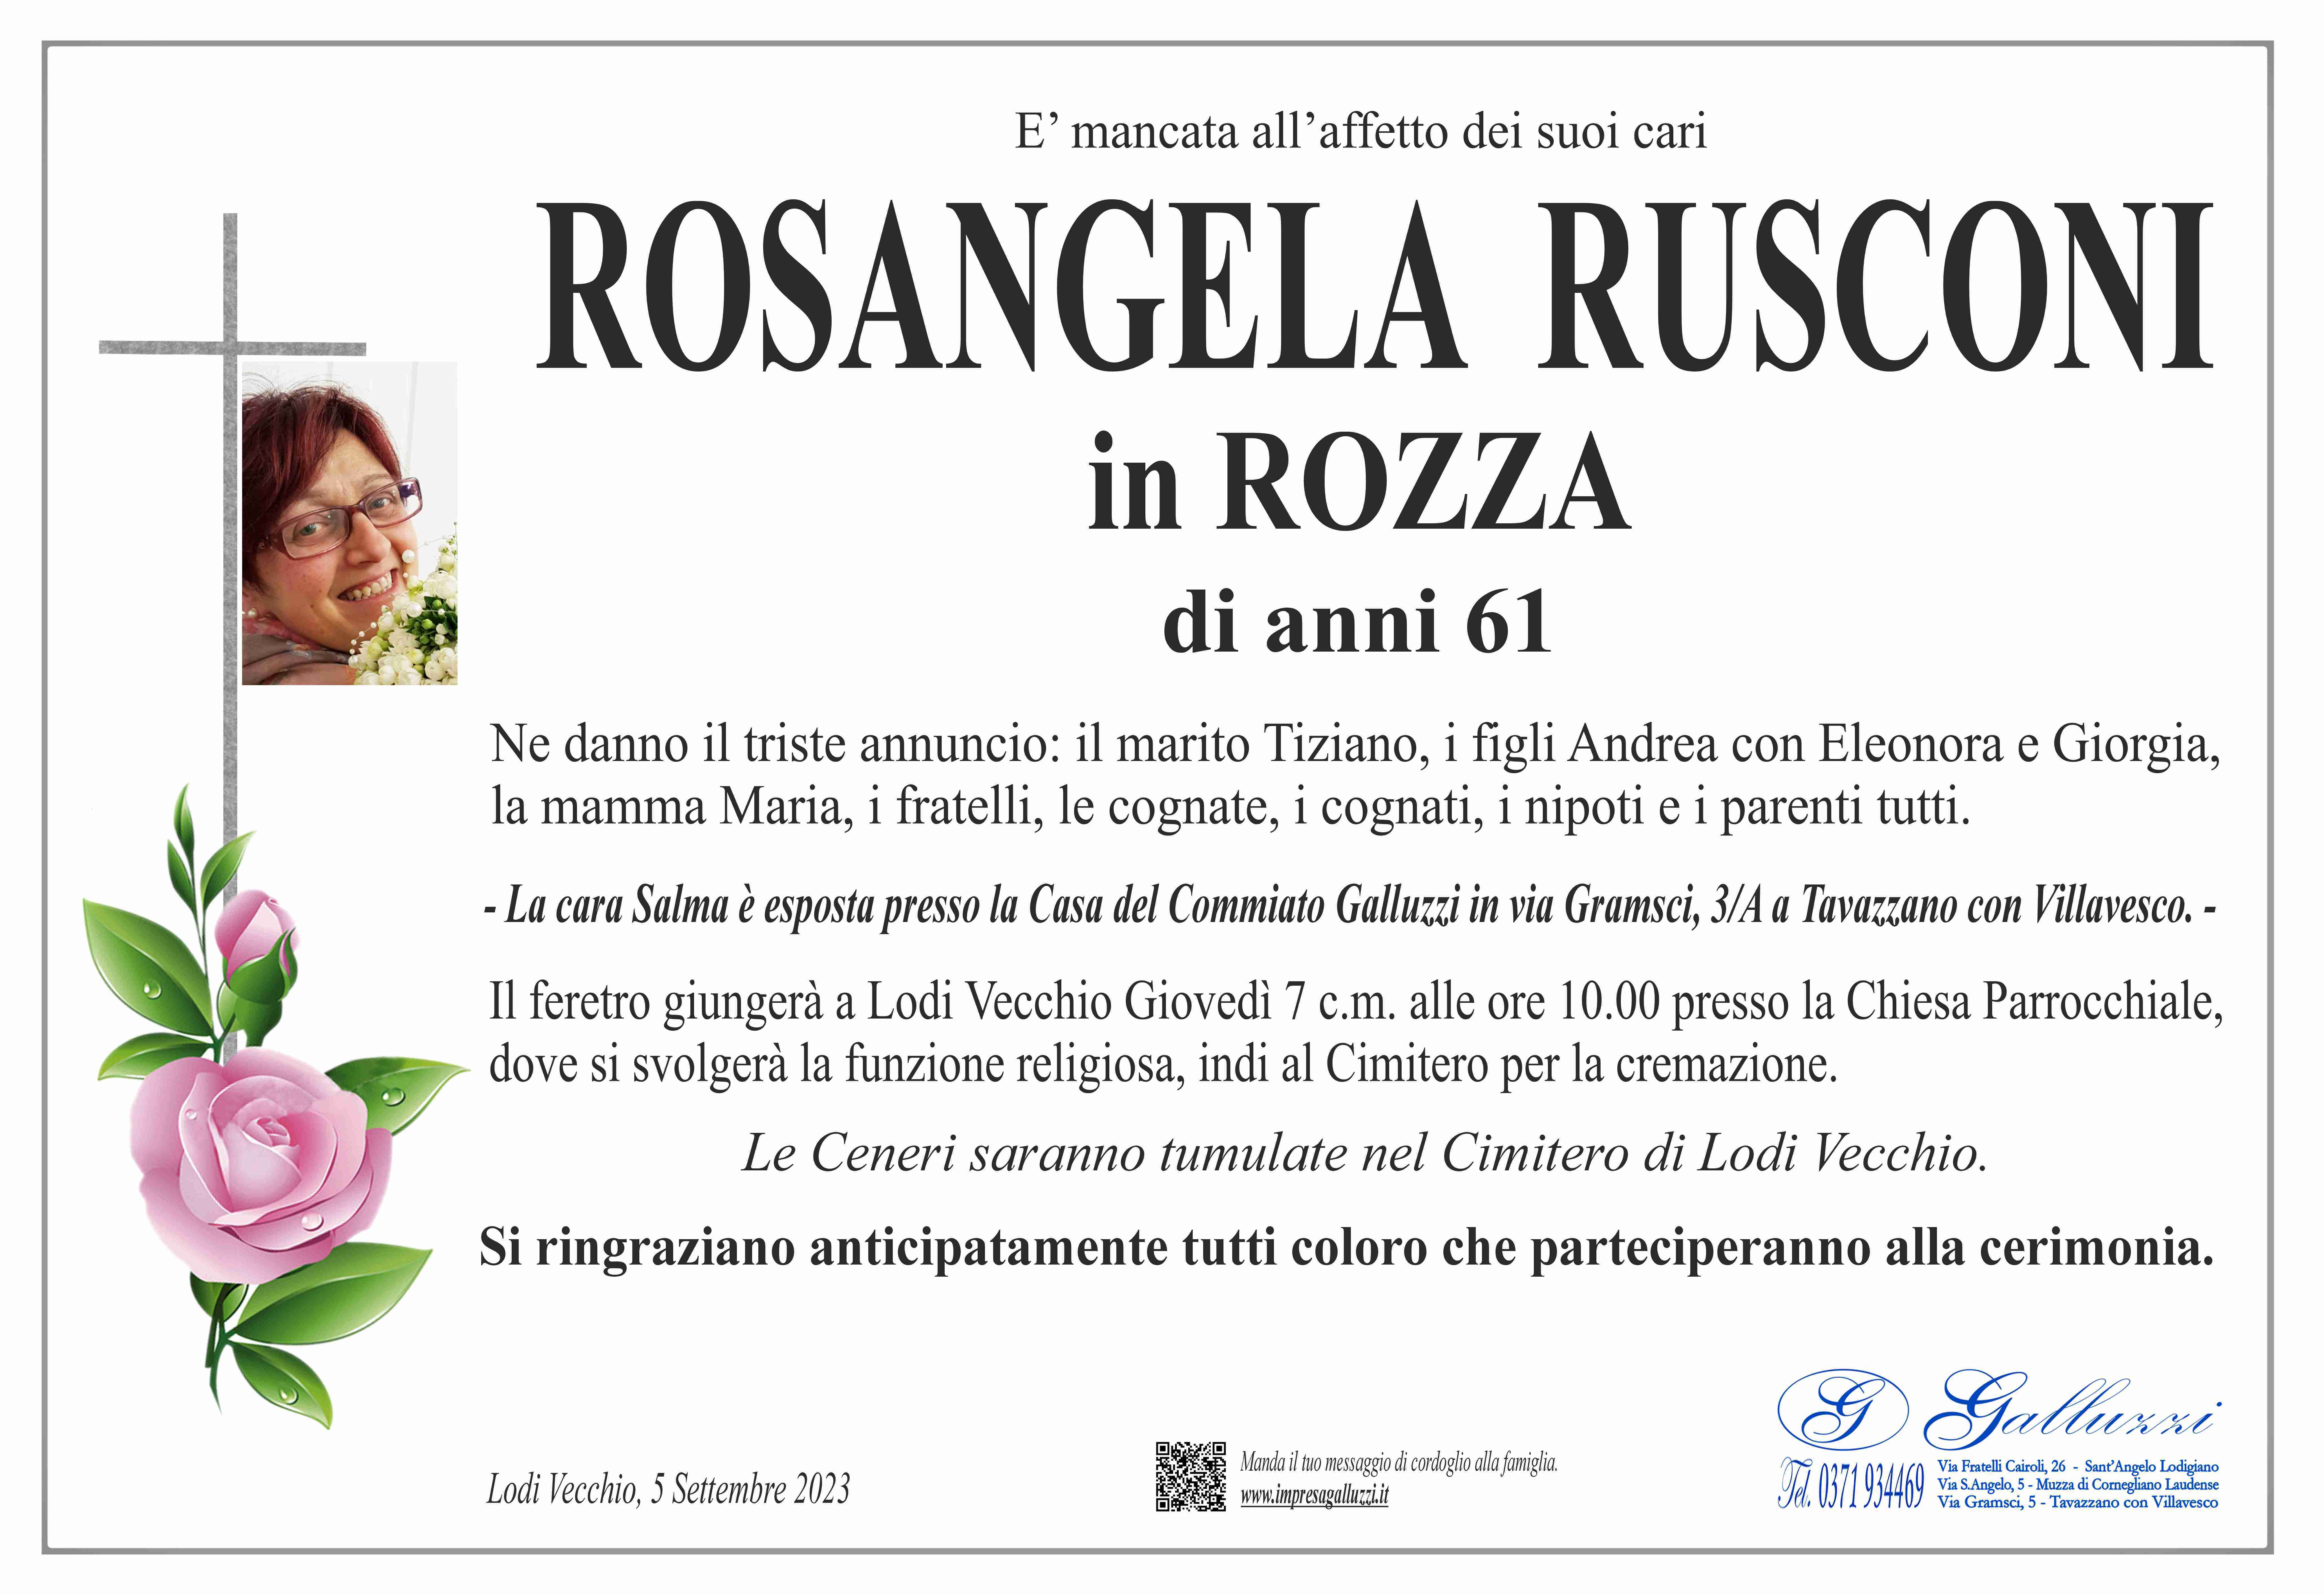 Rosangela Rusconi